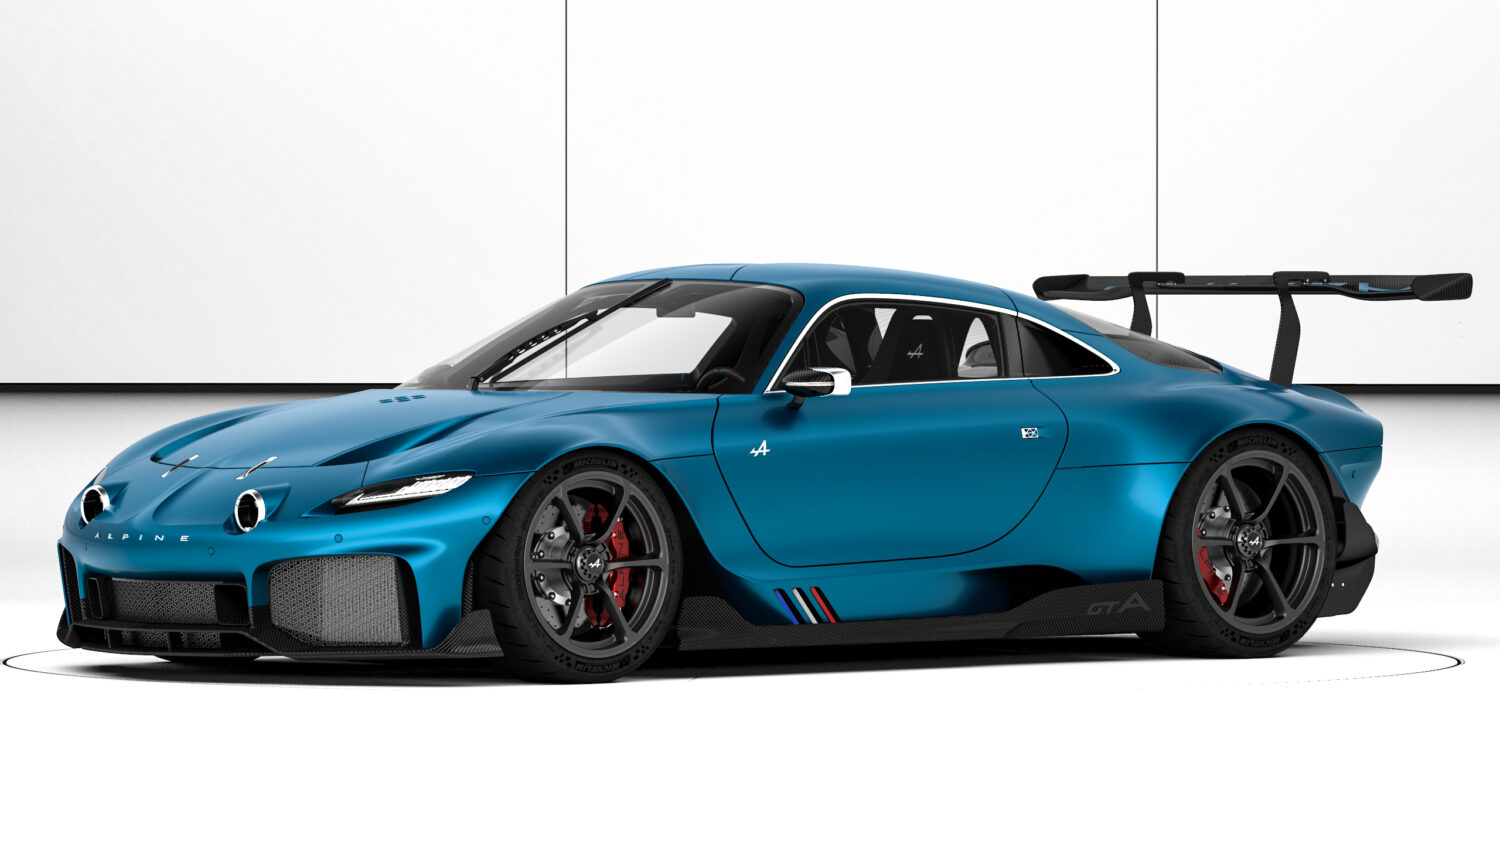 2021 - Alpine GTA Concept - NFT